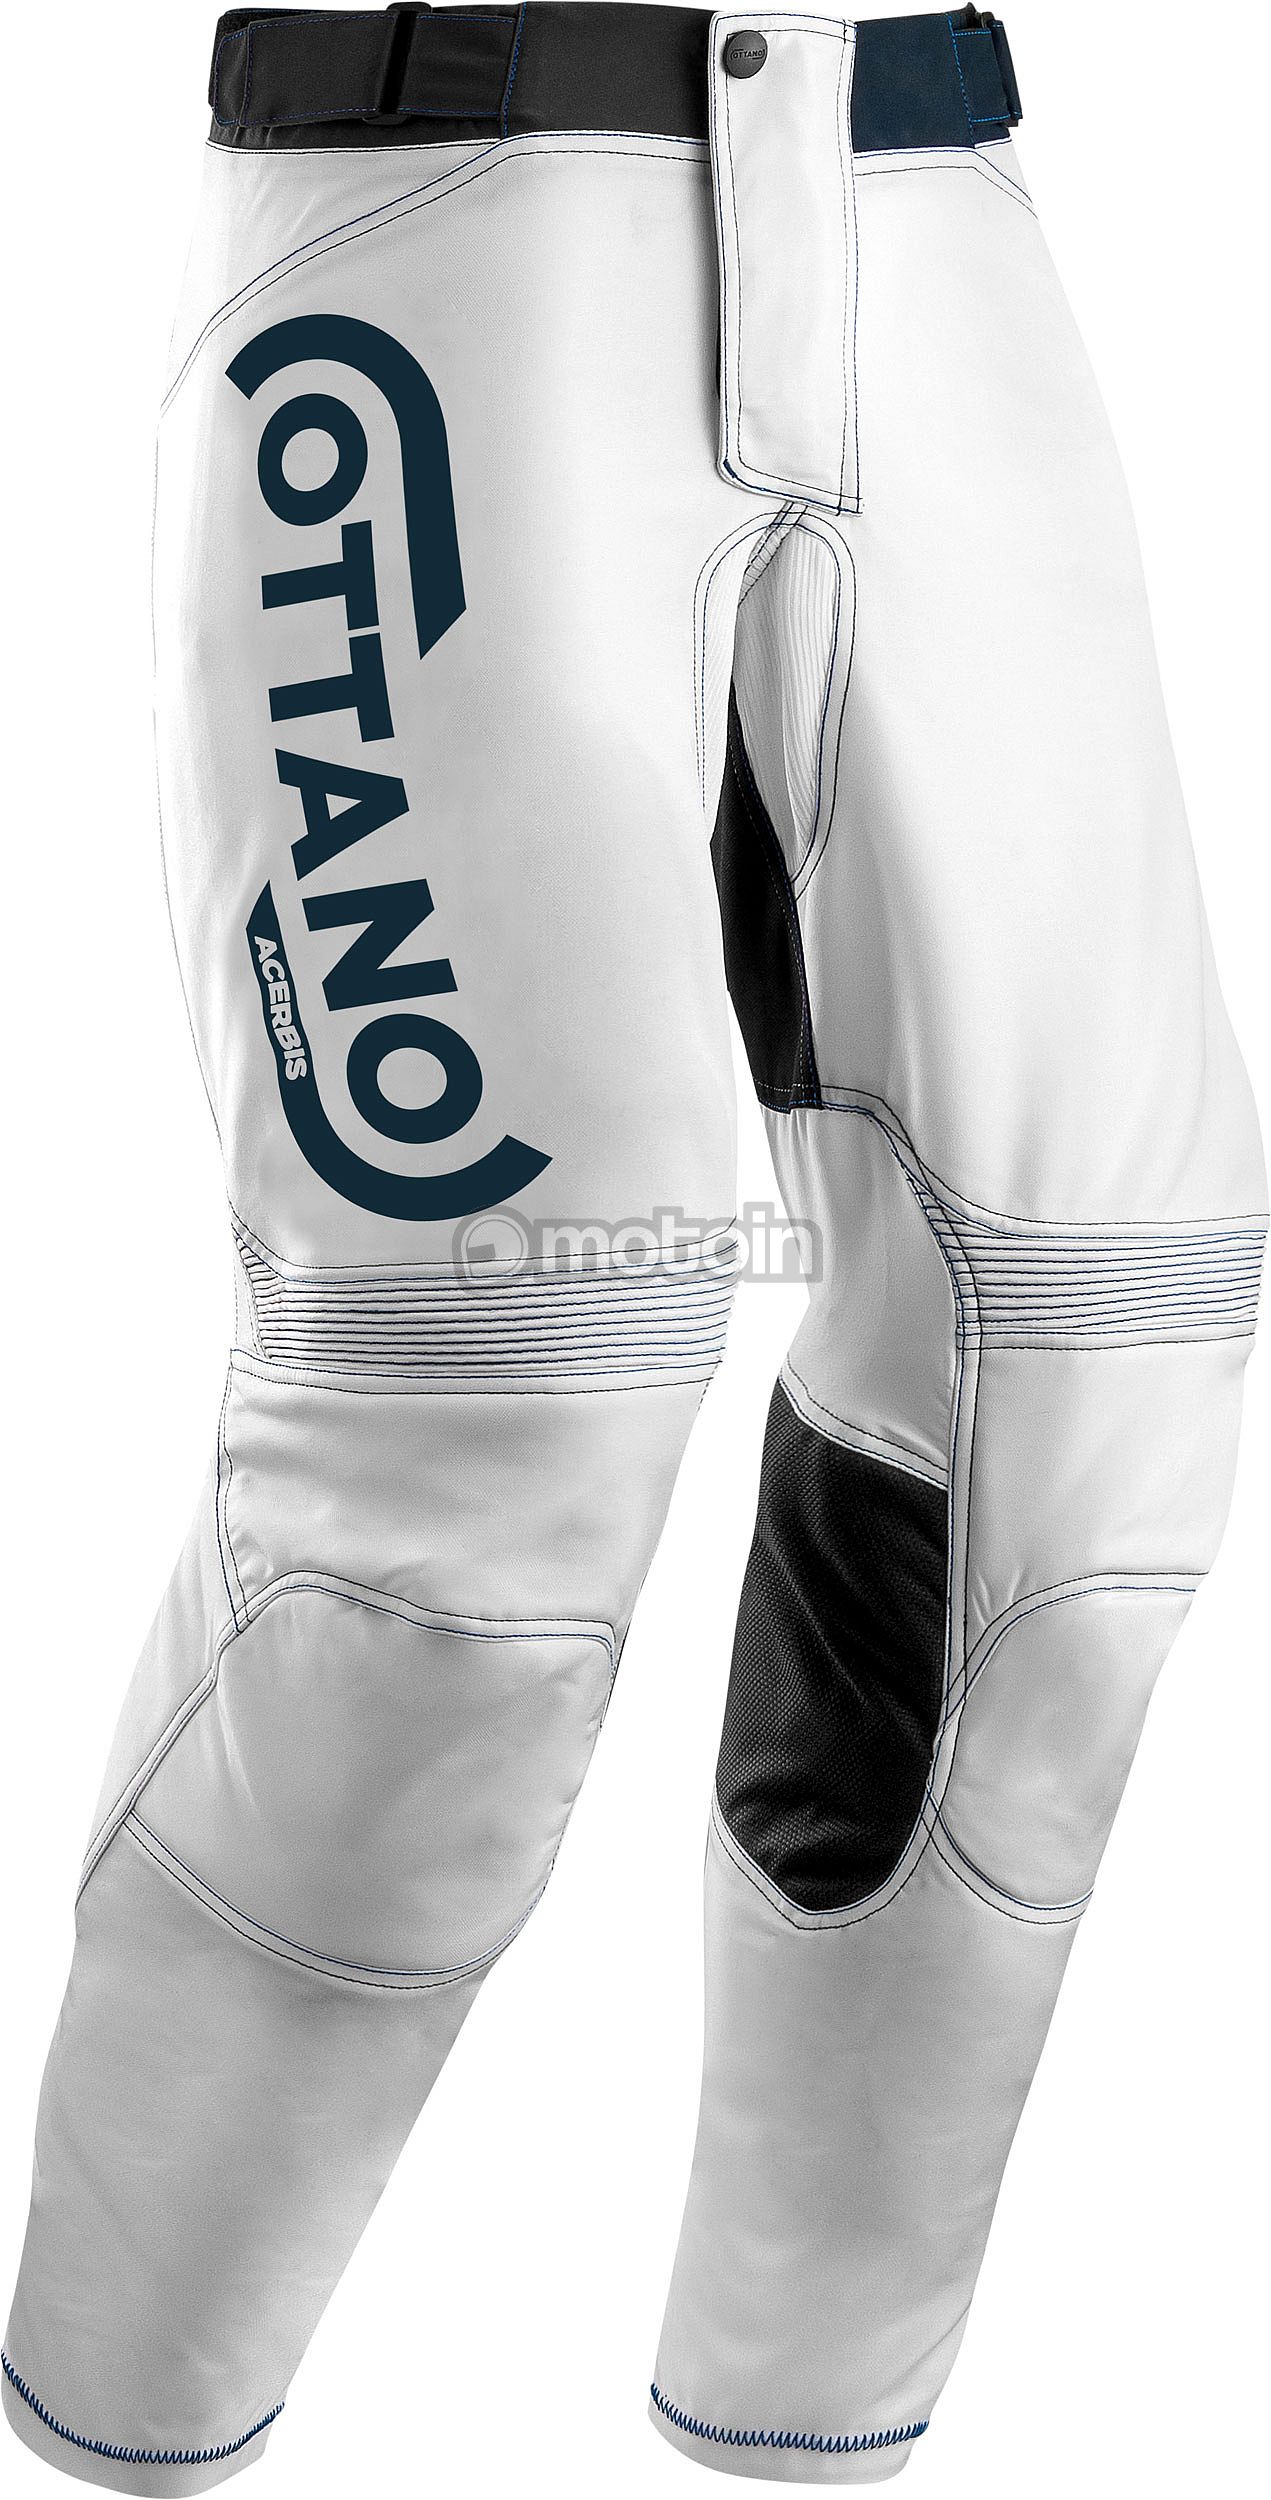 Acerbis Ottano 2.0 Racing, spodnie tekstylne